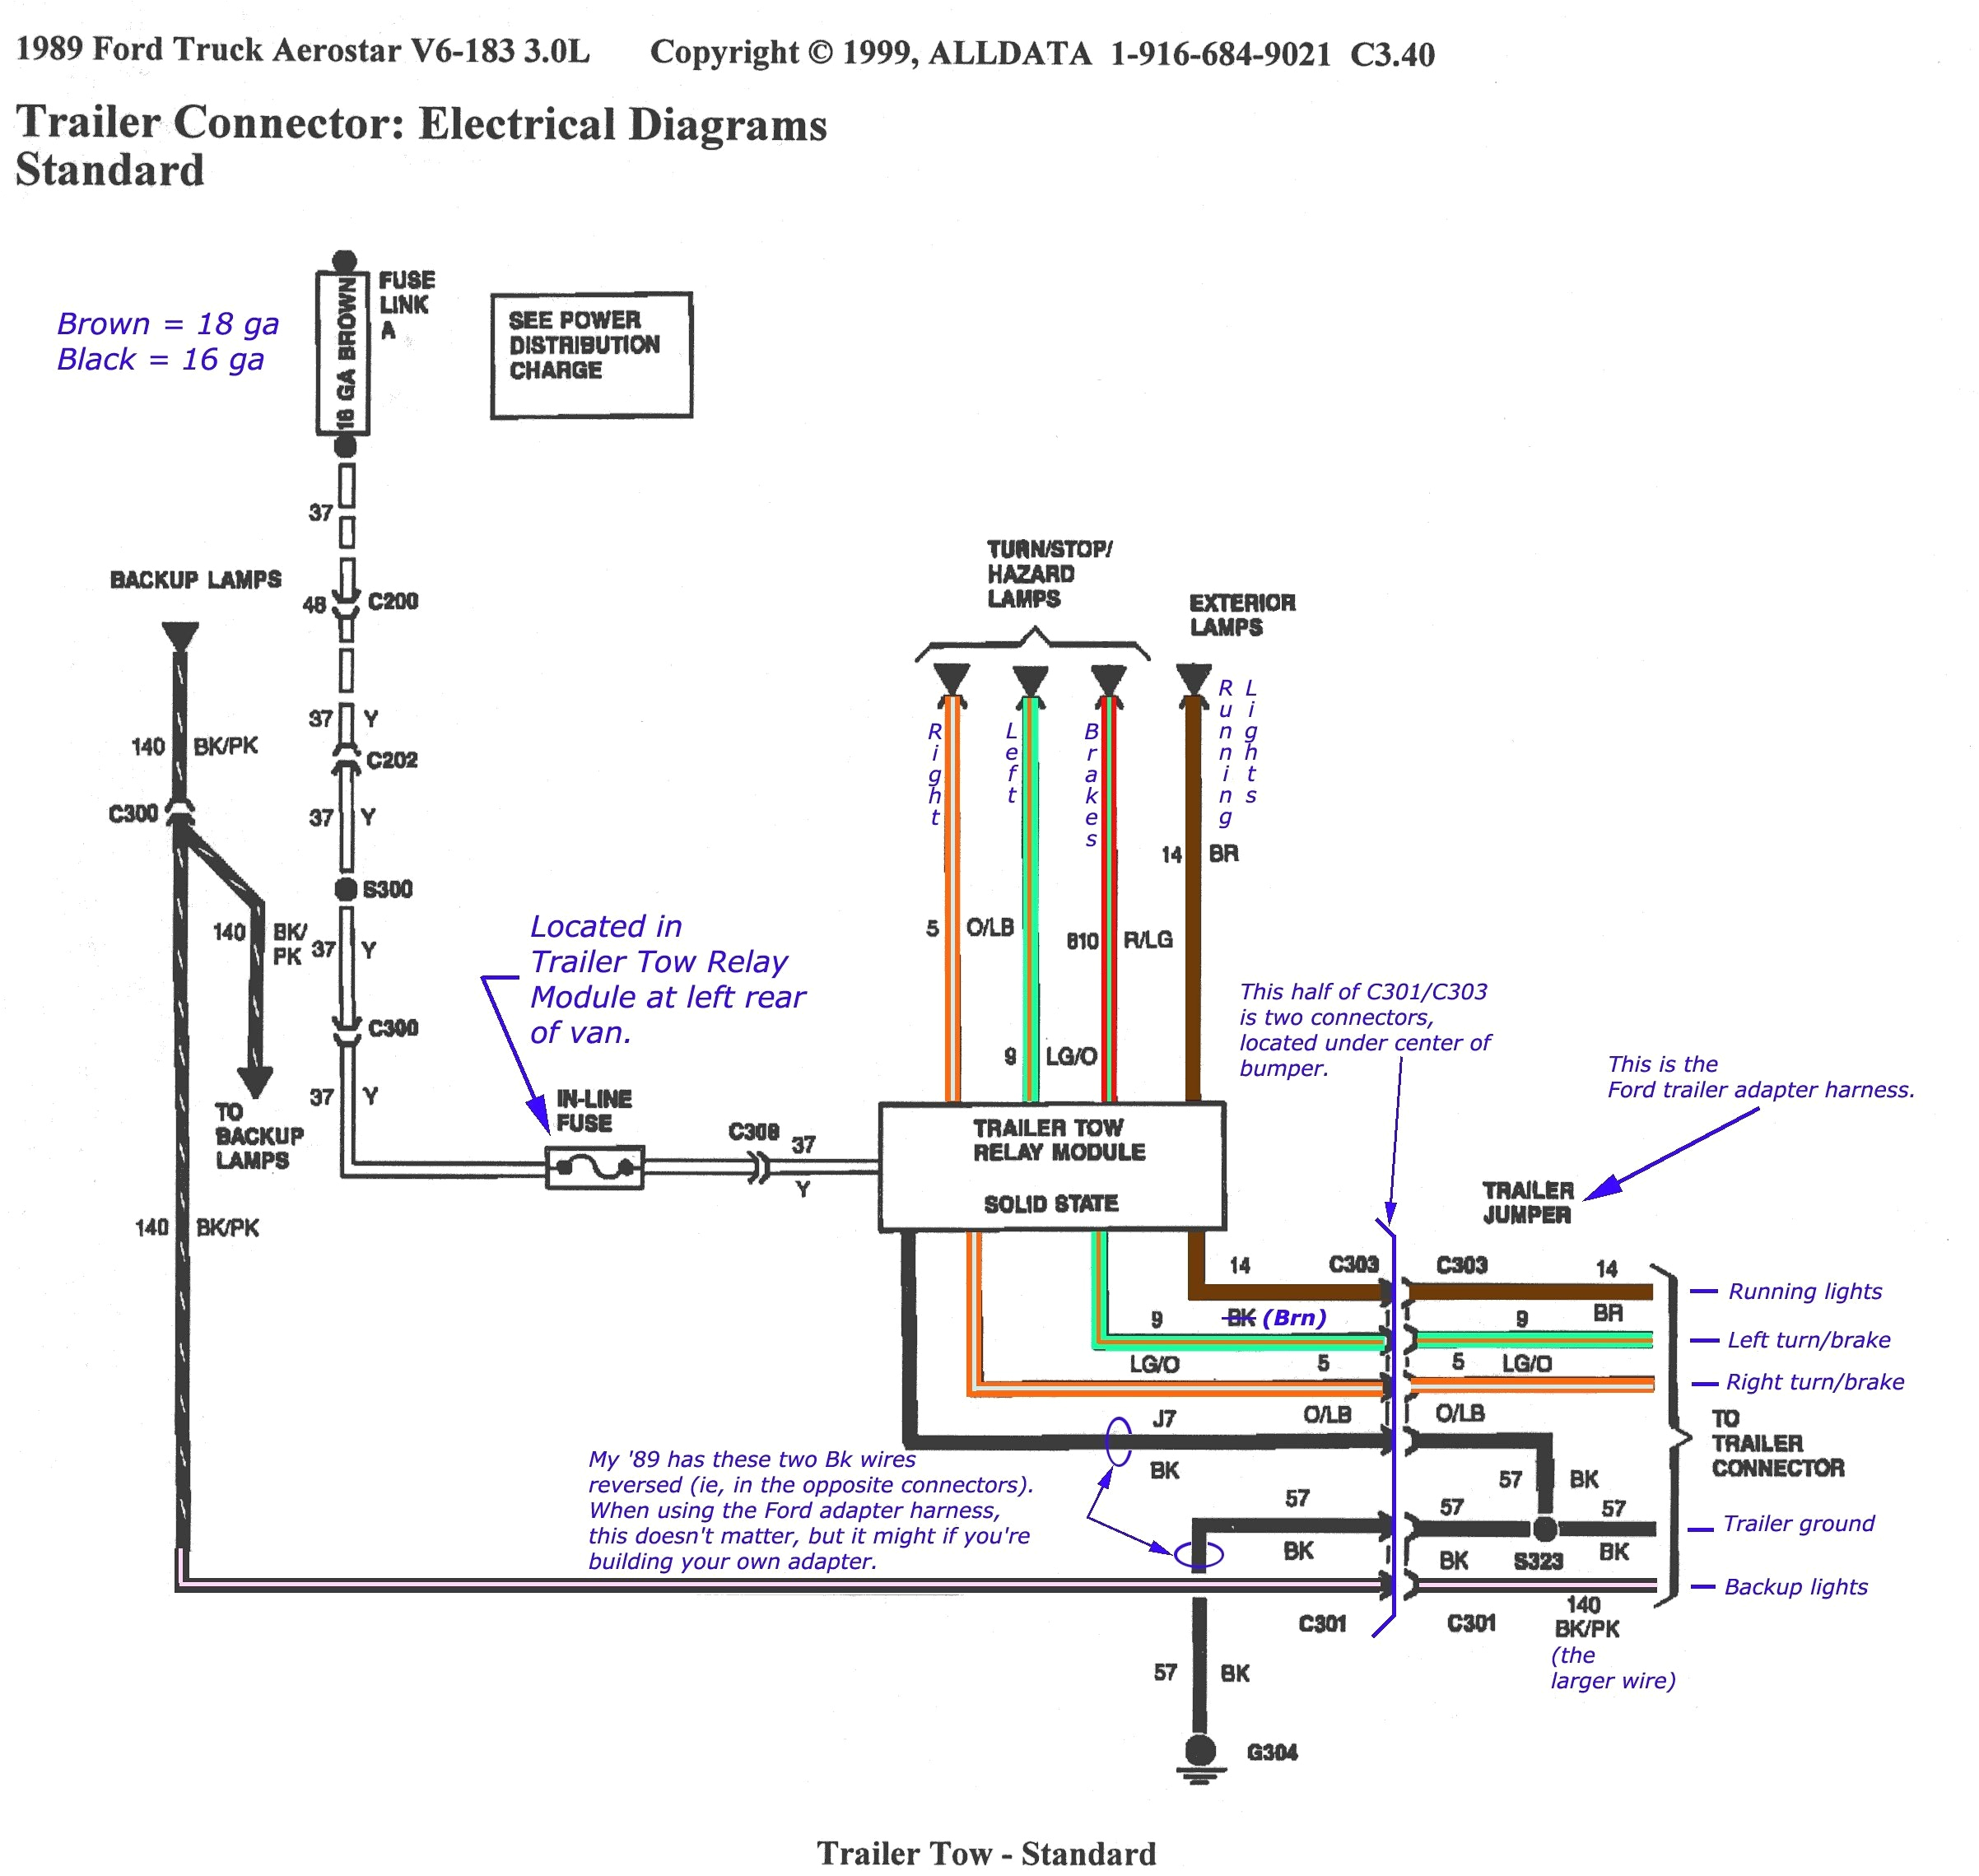 lance c er wiring harness diagram schema wiring diagram lance c er wiring harness diagram